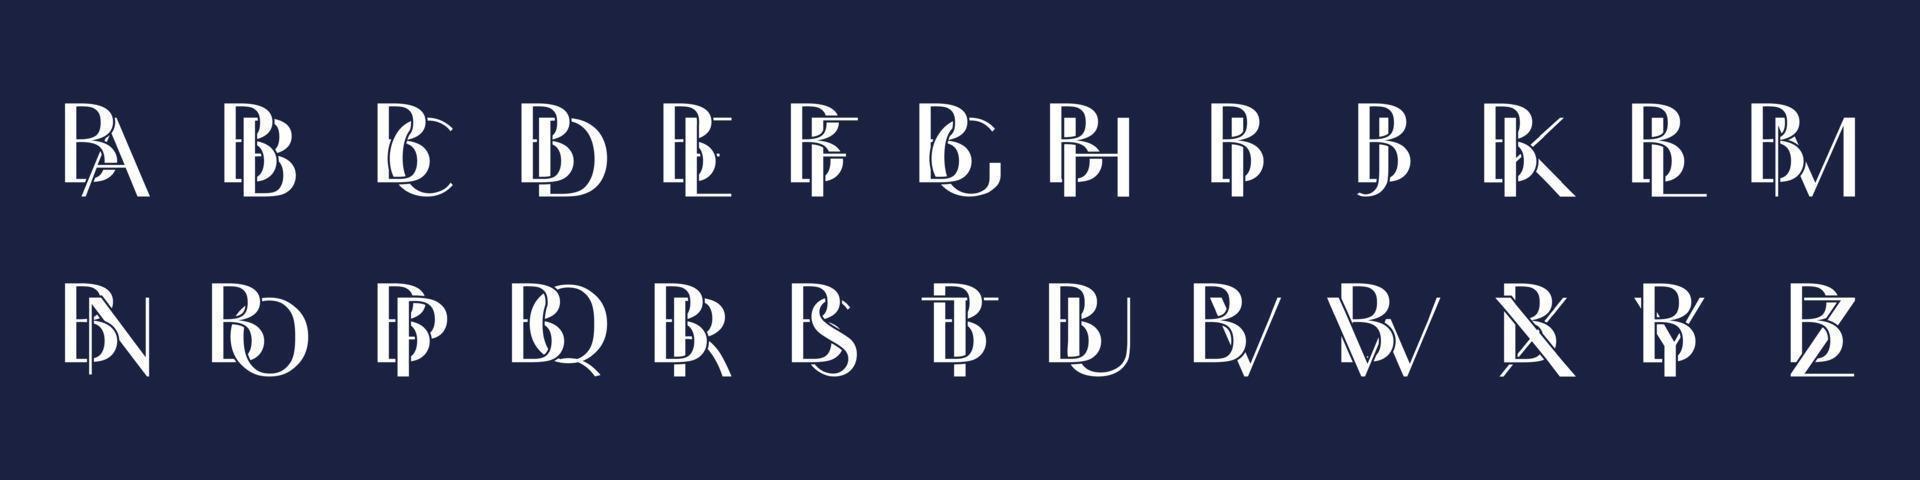 coleção ba to bz logotipo inicial para identidade corporativa ou de marca vetor